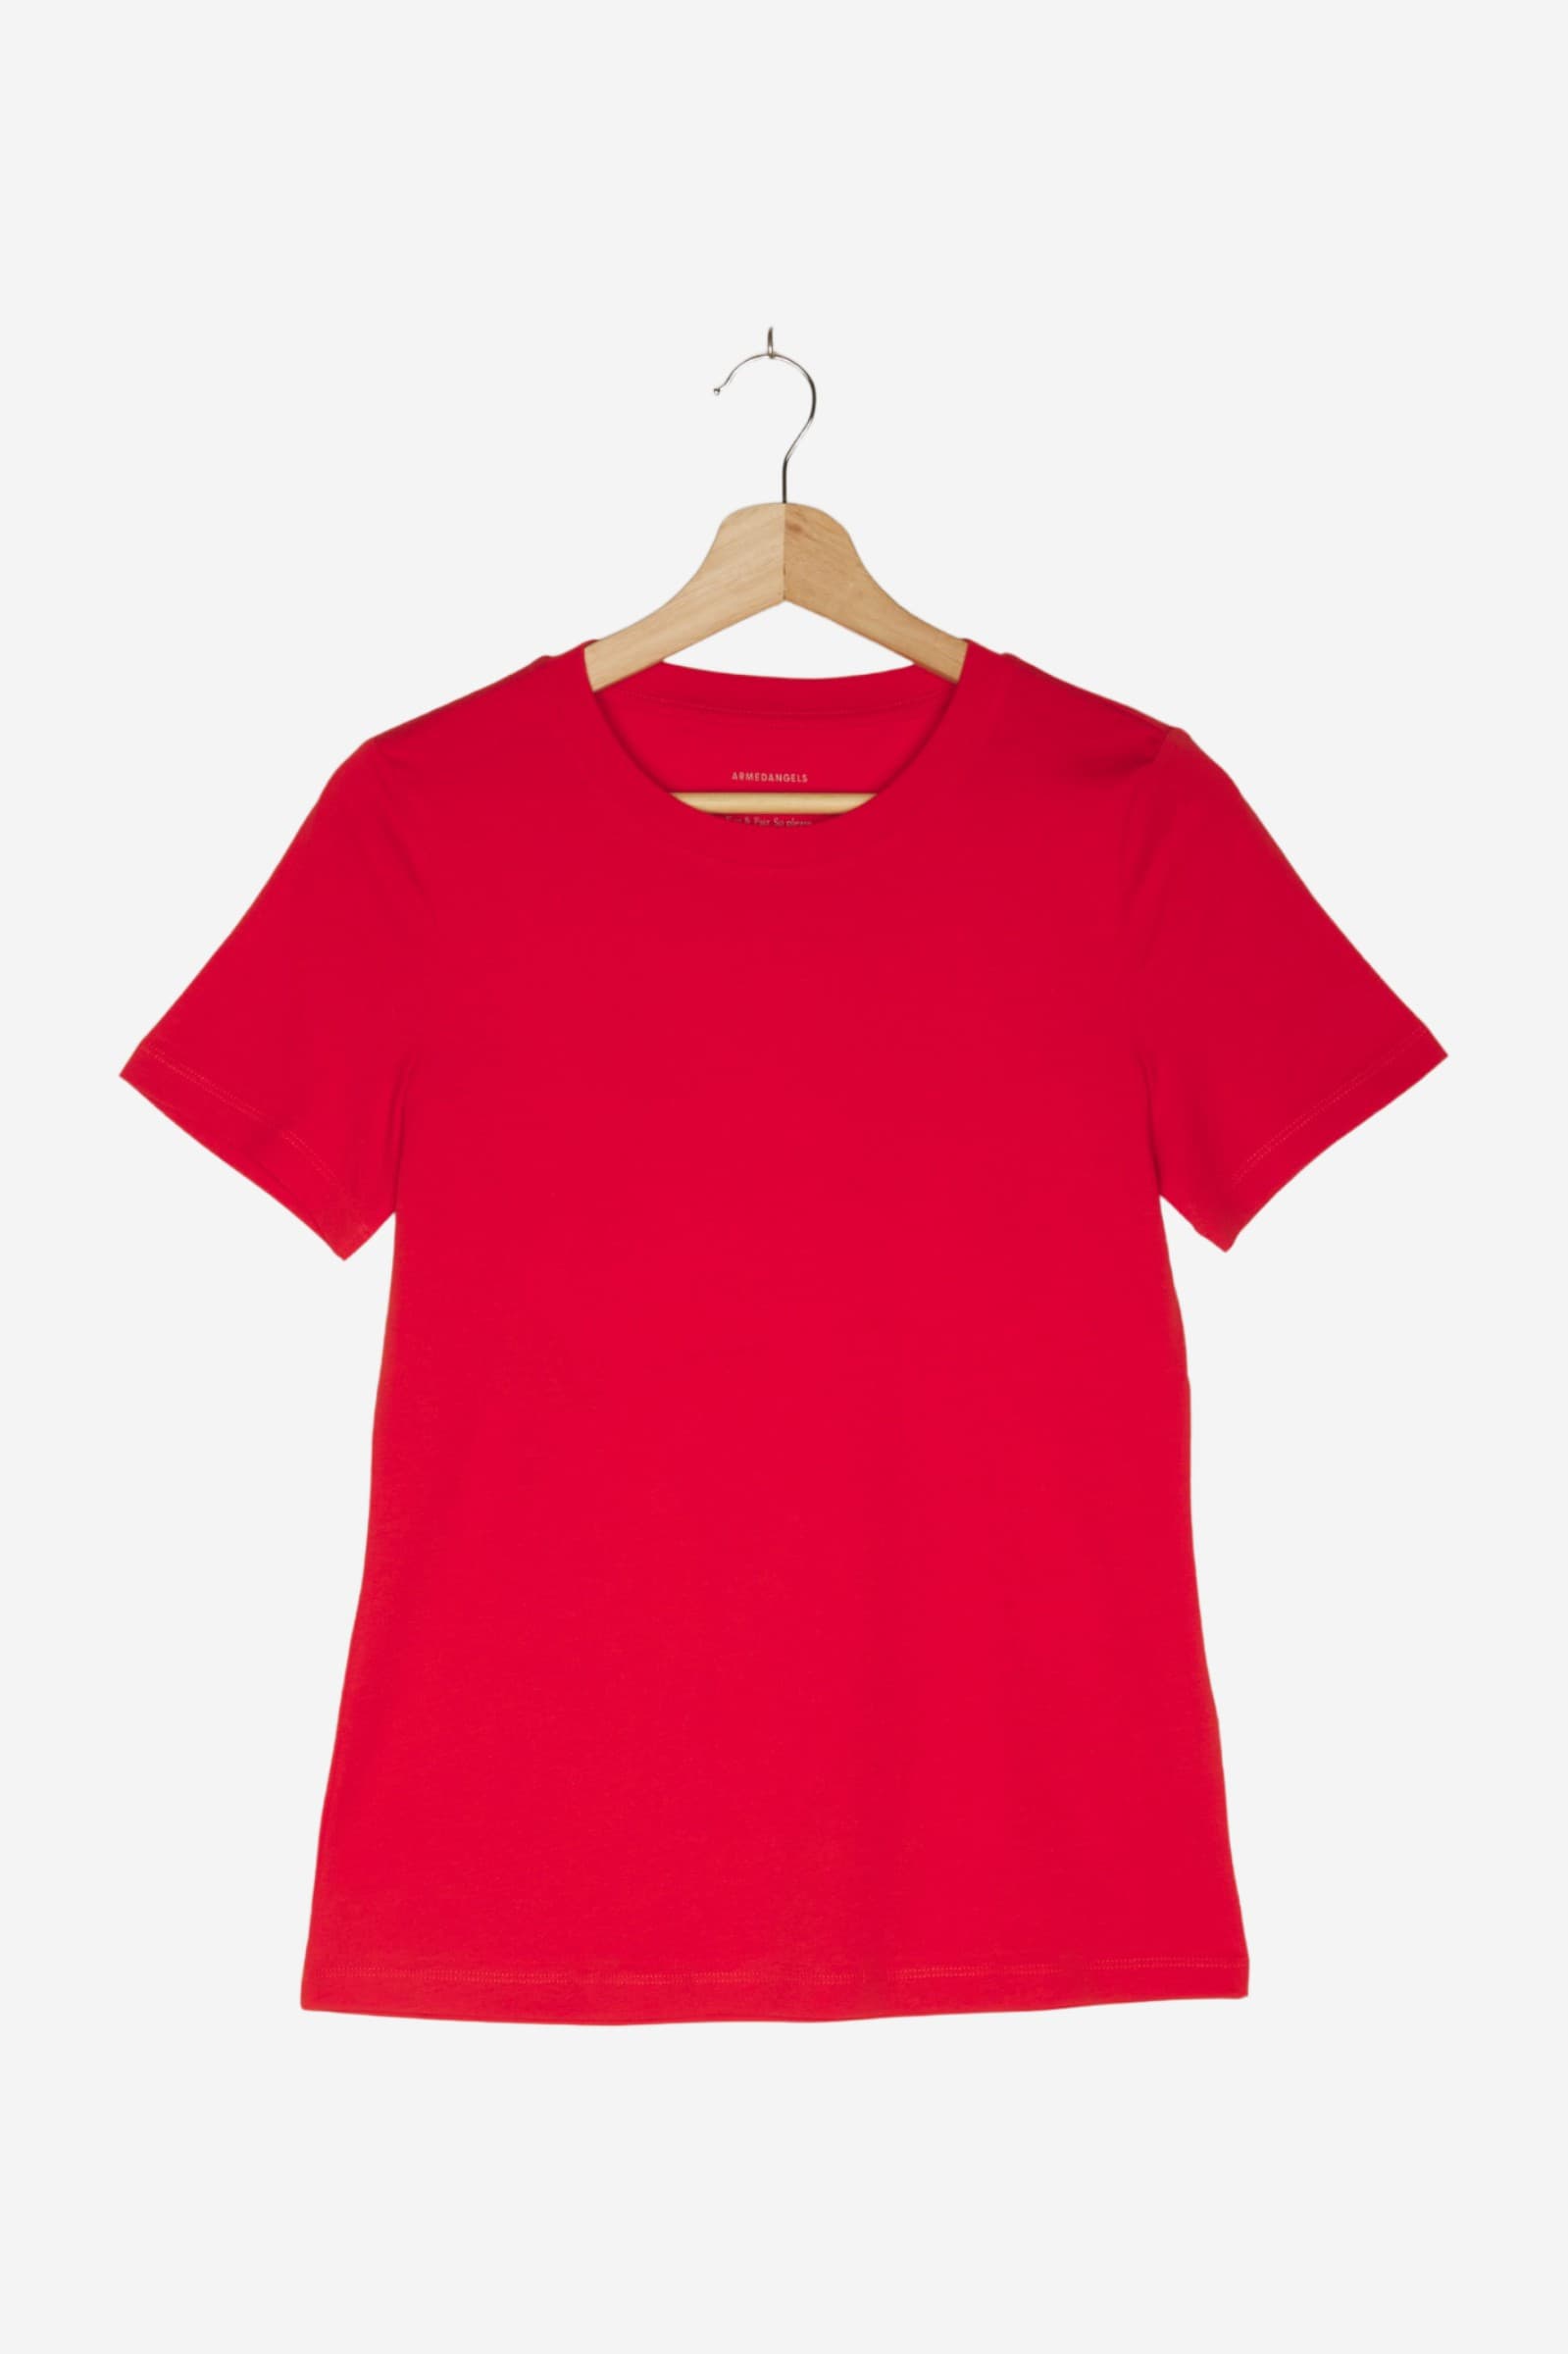 women Tops & T-Shirts Shirts / T-Shirt Red